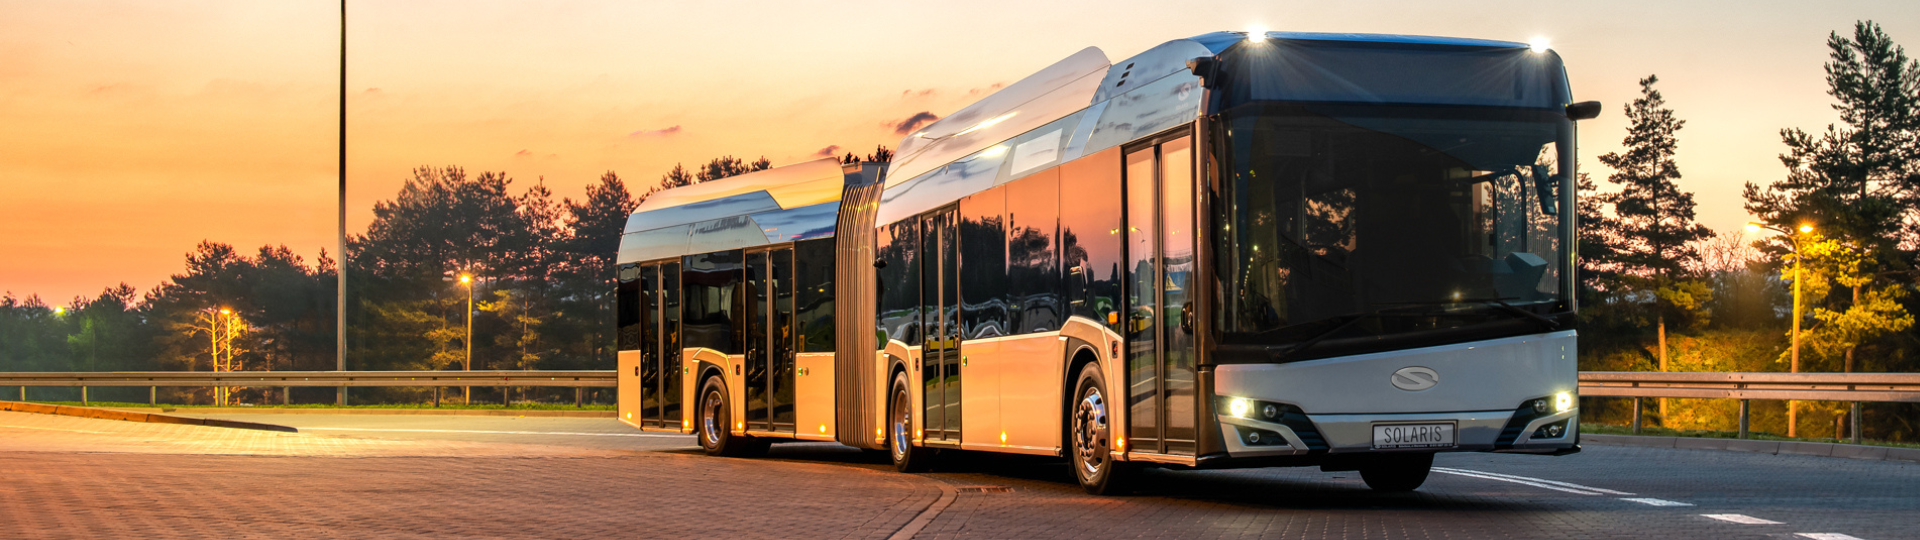 Solaris-Elektrobusse kommen bald nach Łódź